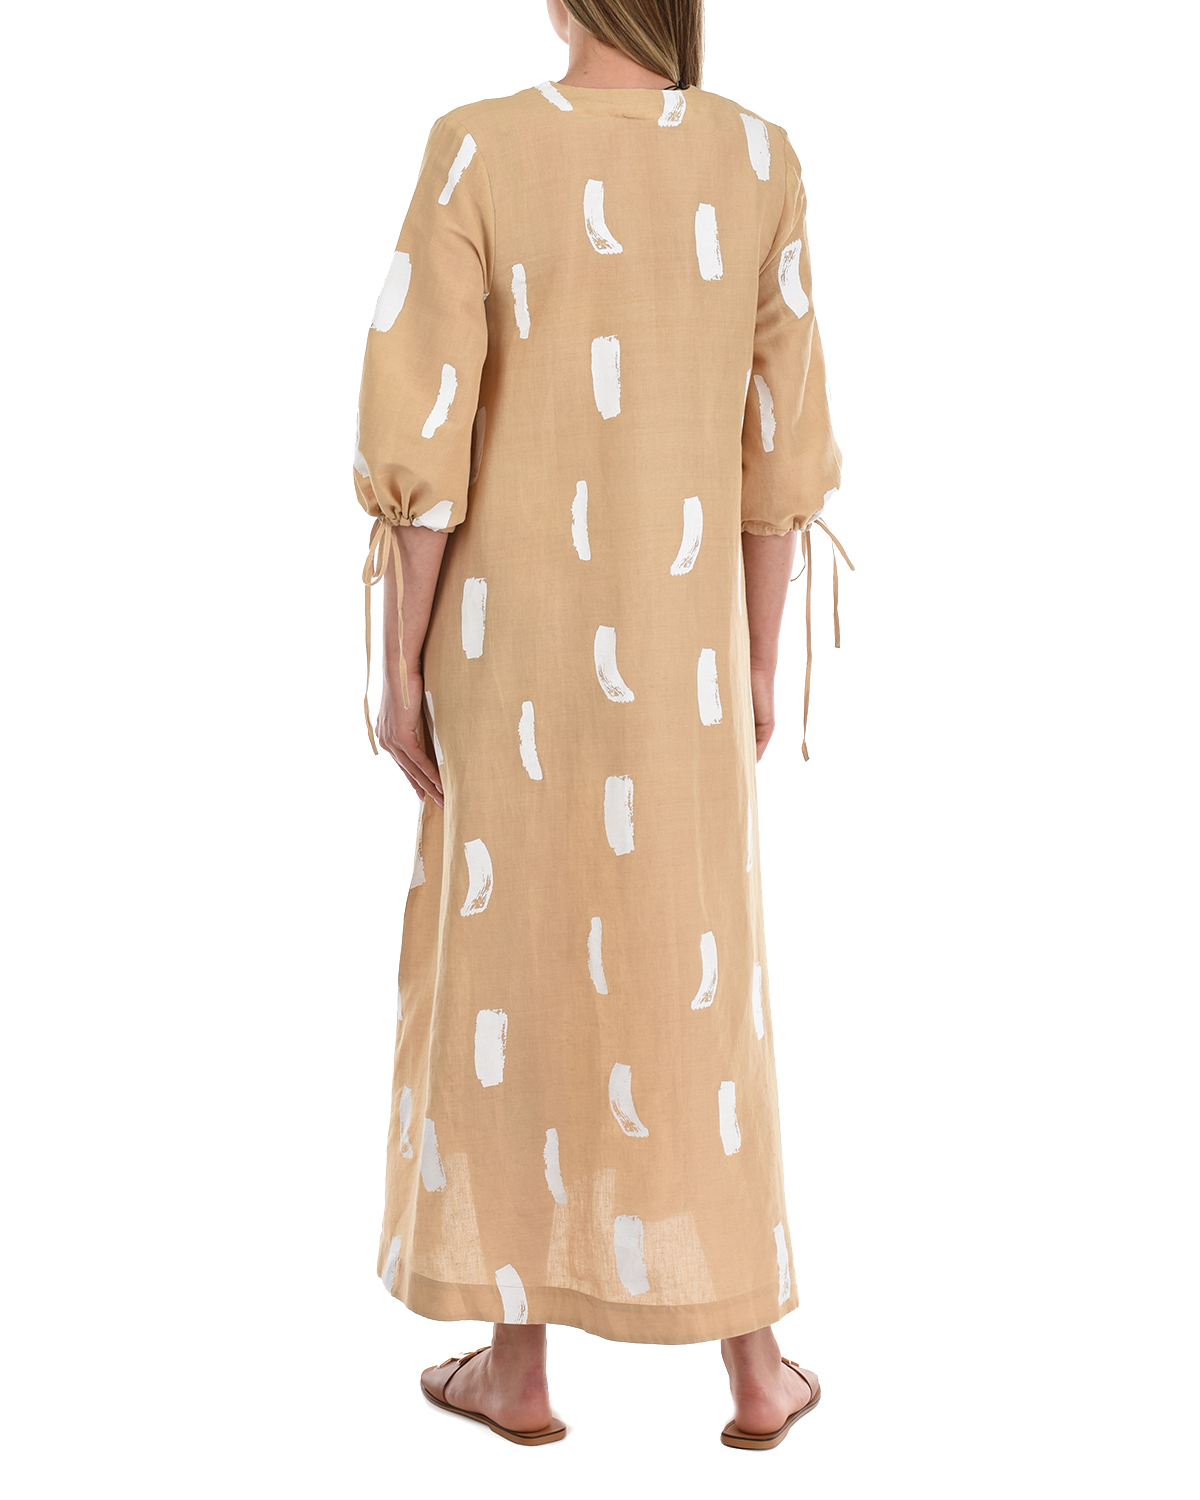 Бежевое платье с абстрактным принтом LOVE BIRDS, размер 40, цвет бежевый - фото 3